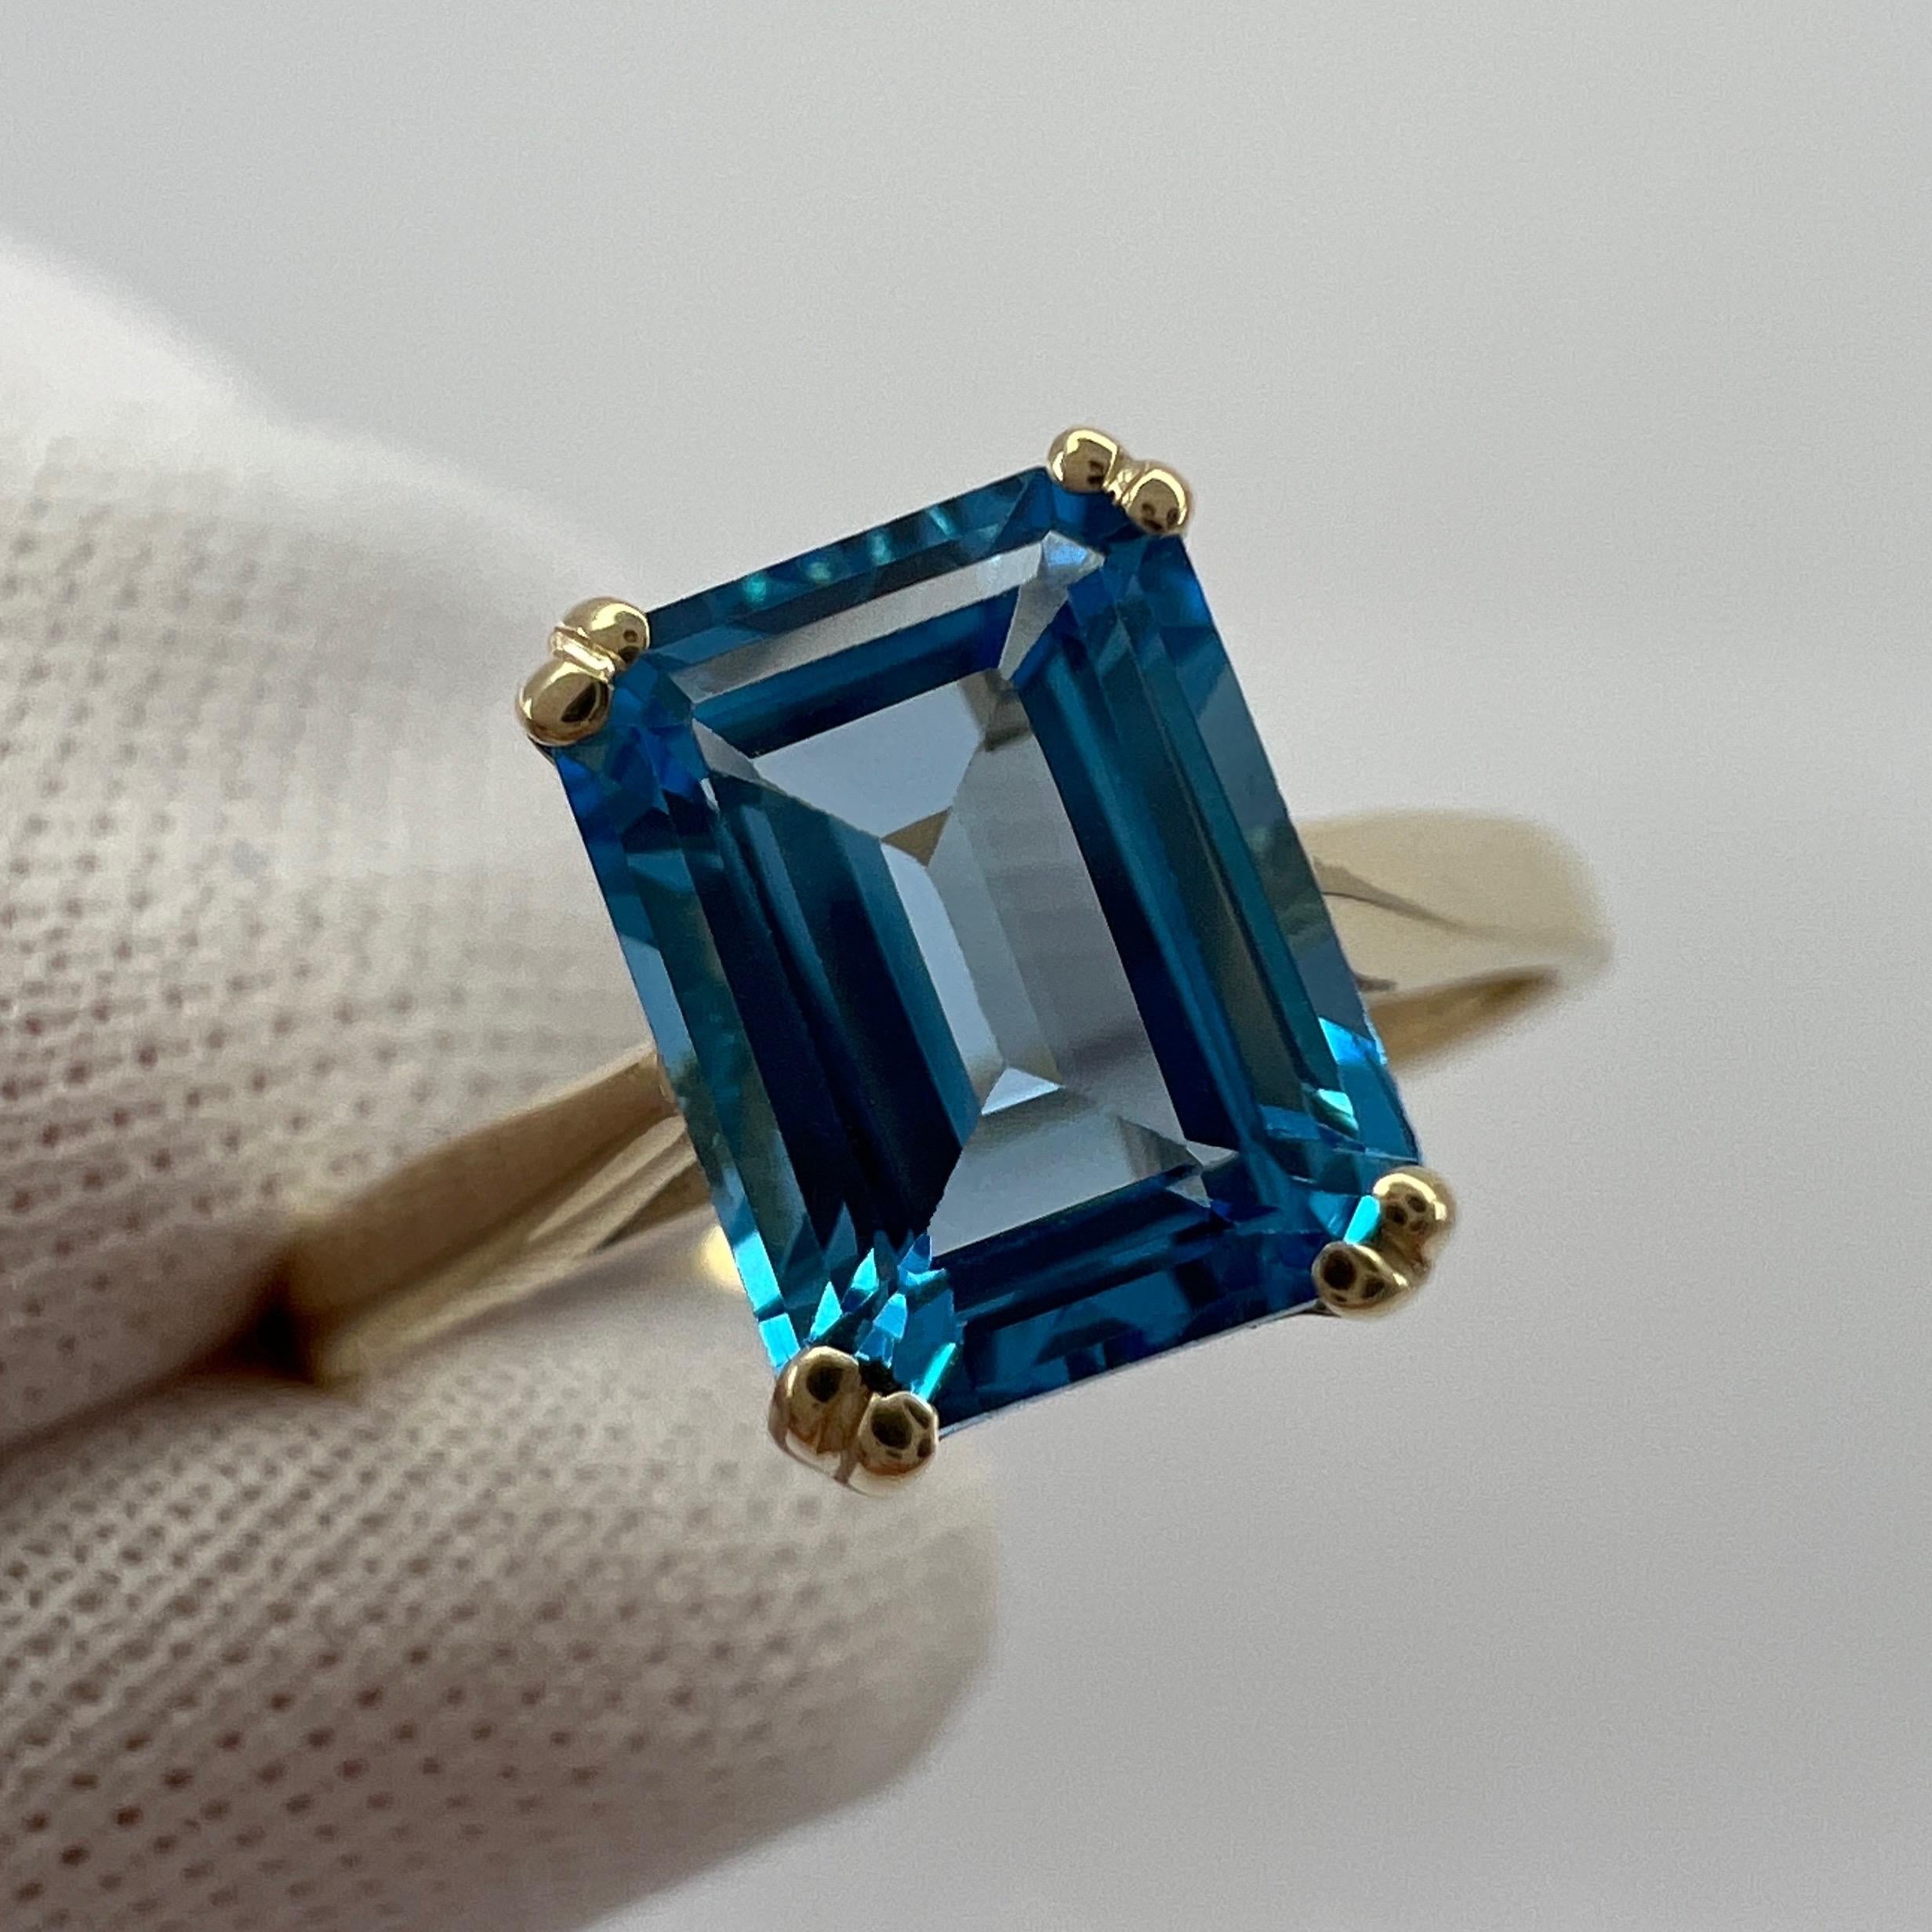 Emerald Octagonal Cut Vivid Swiss Blue Topaz Solitaire Ring.

Topaze de 2,00 carats d'un bleu suisse éclatant et d'une excellente clarté, pierre très propre. Il possède également une émeraude d'excellente qualité, de taille octogonale, qui met en